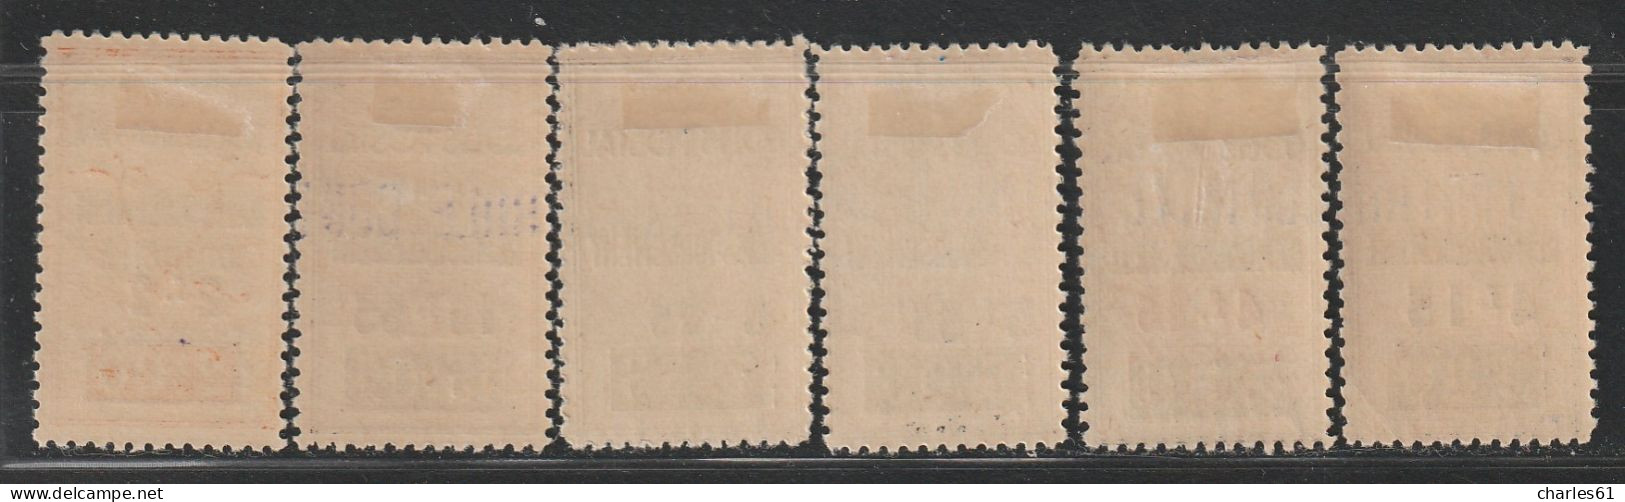 ALGERIE - COLIS POSTAUX - N°77+77a+78+79+81+82 * (1941) 6 Valeurs - Paquetes Postales